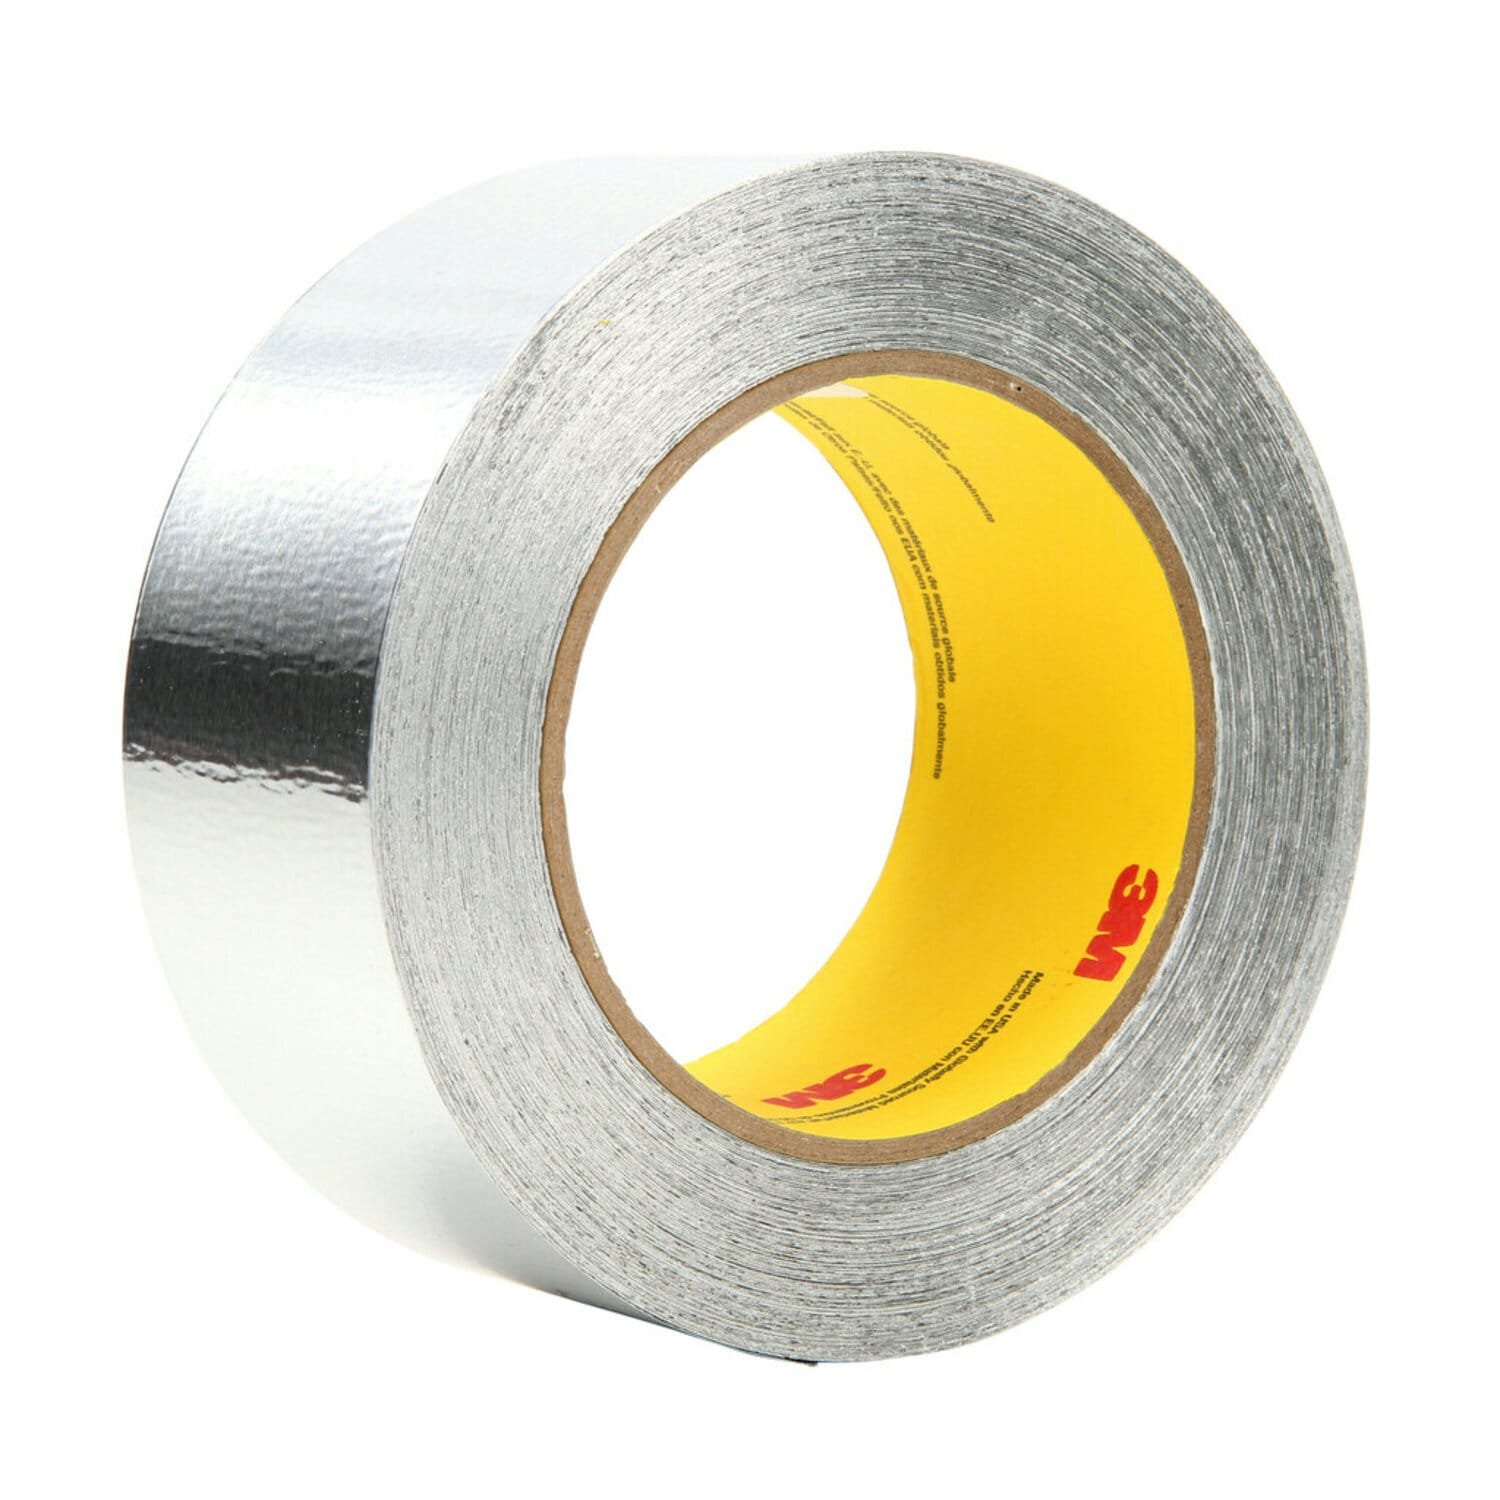 7100053630 - 3M Aluminum Foil Tape 425, Silver, 2 in x 60 yd, 4.6 mil, 24 rolls per
case